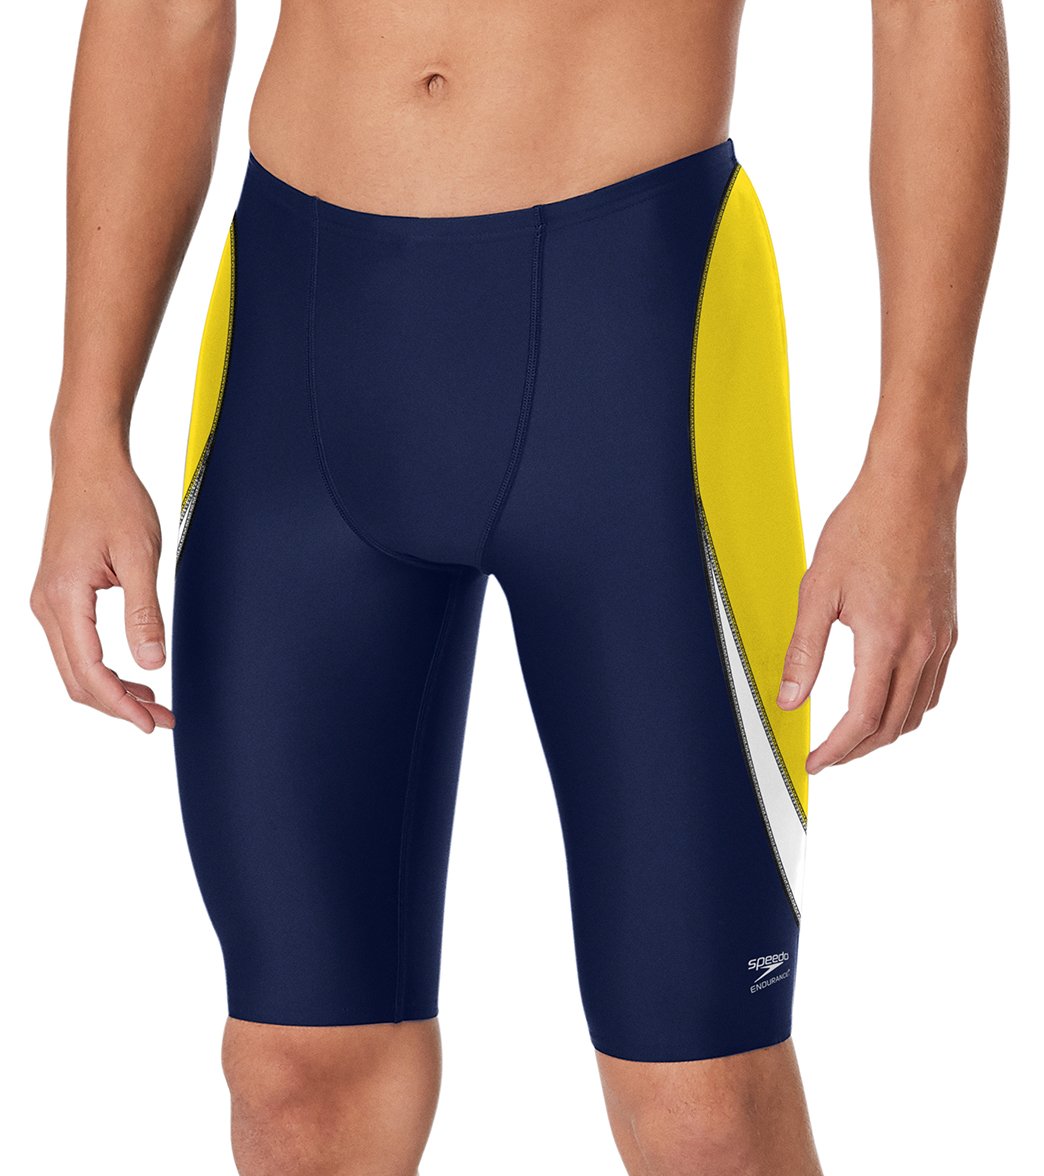 Speedo Men's Edge Splice Jammer Swimsuit - Navy/Gold 24 - Swimoutlet.com